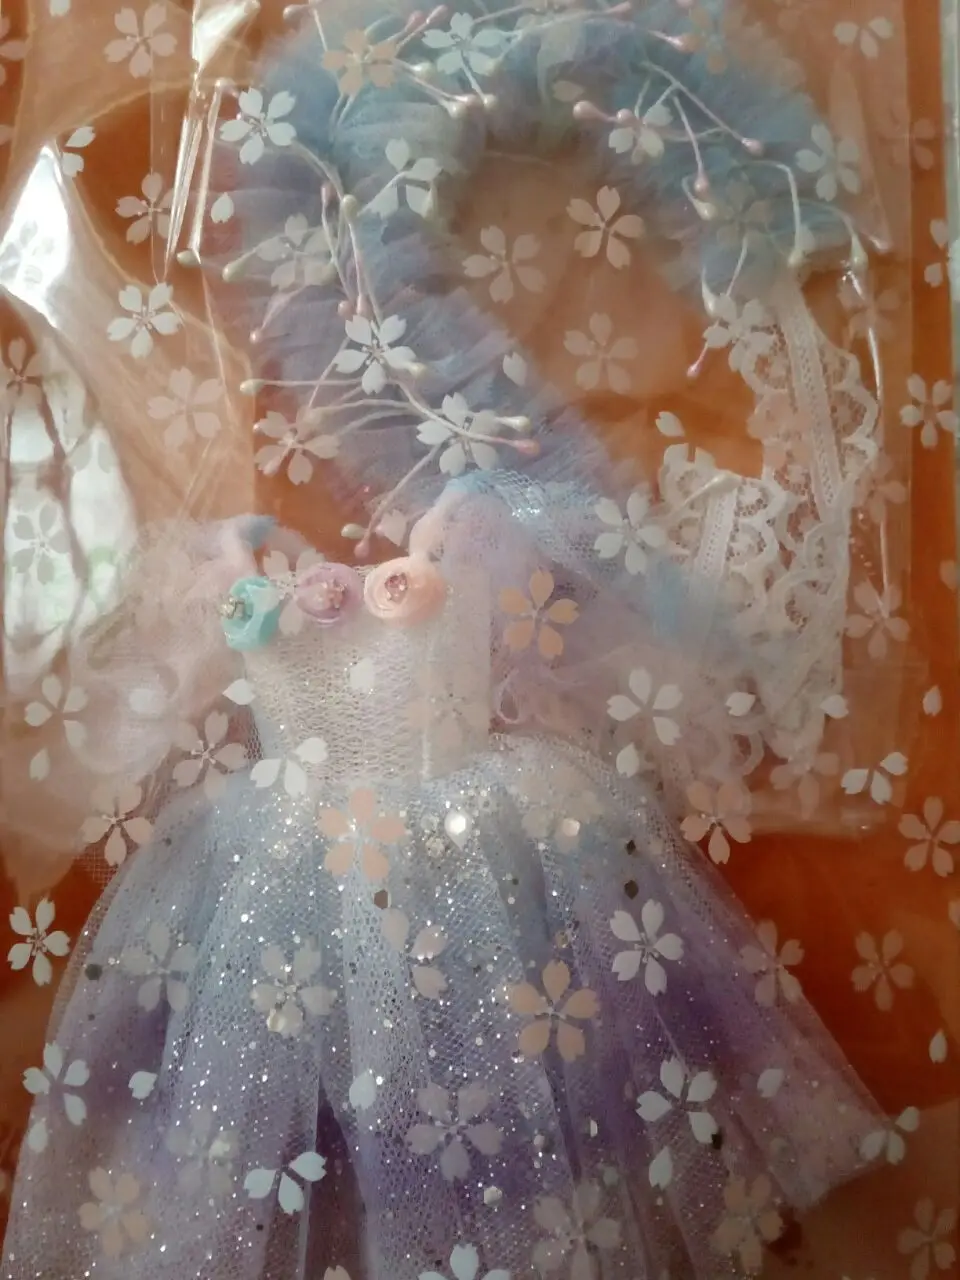 Супер фея Blyth кукла небо сияющее платье с лентой для волос для Blyth, Pullip, Kurhn, Licca, Momoko куклы 1 набор = 2 шт без куклы